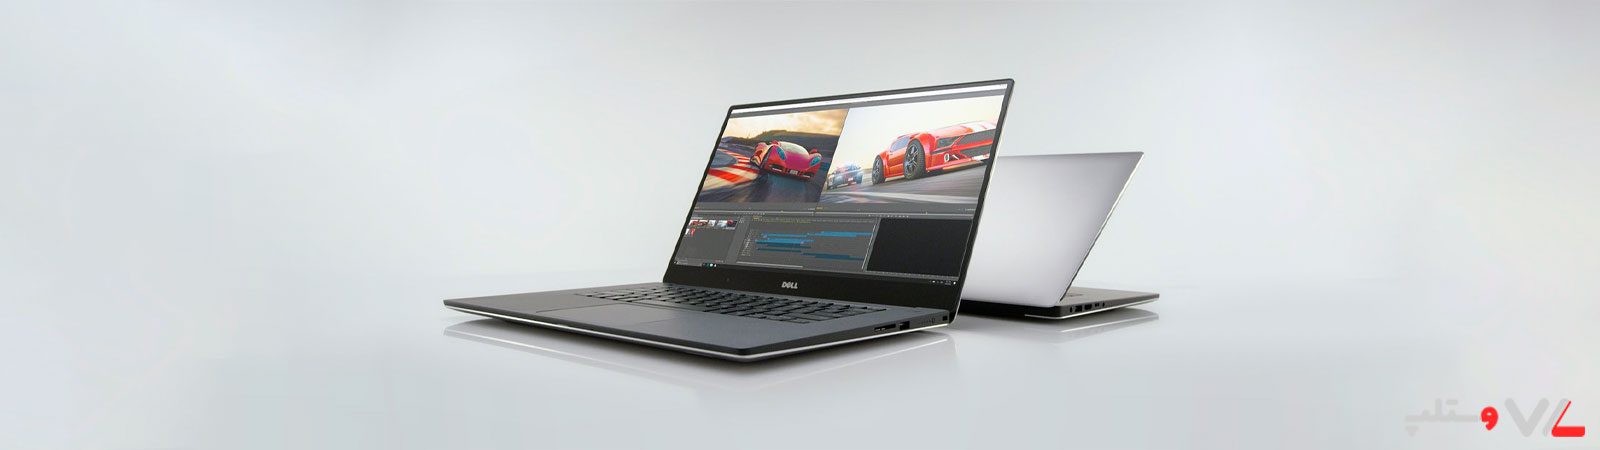 لپ تاپ Dell Precision 5520